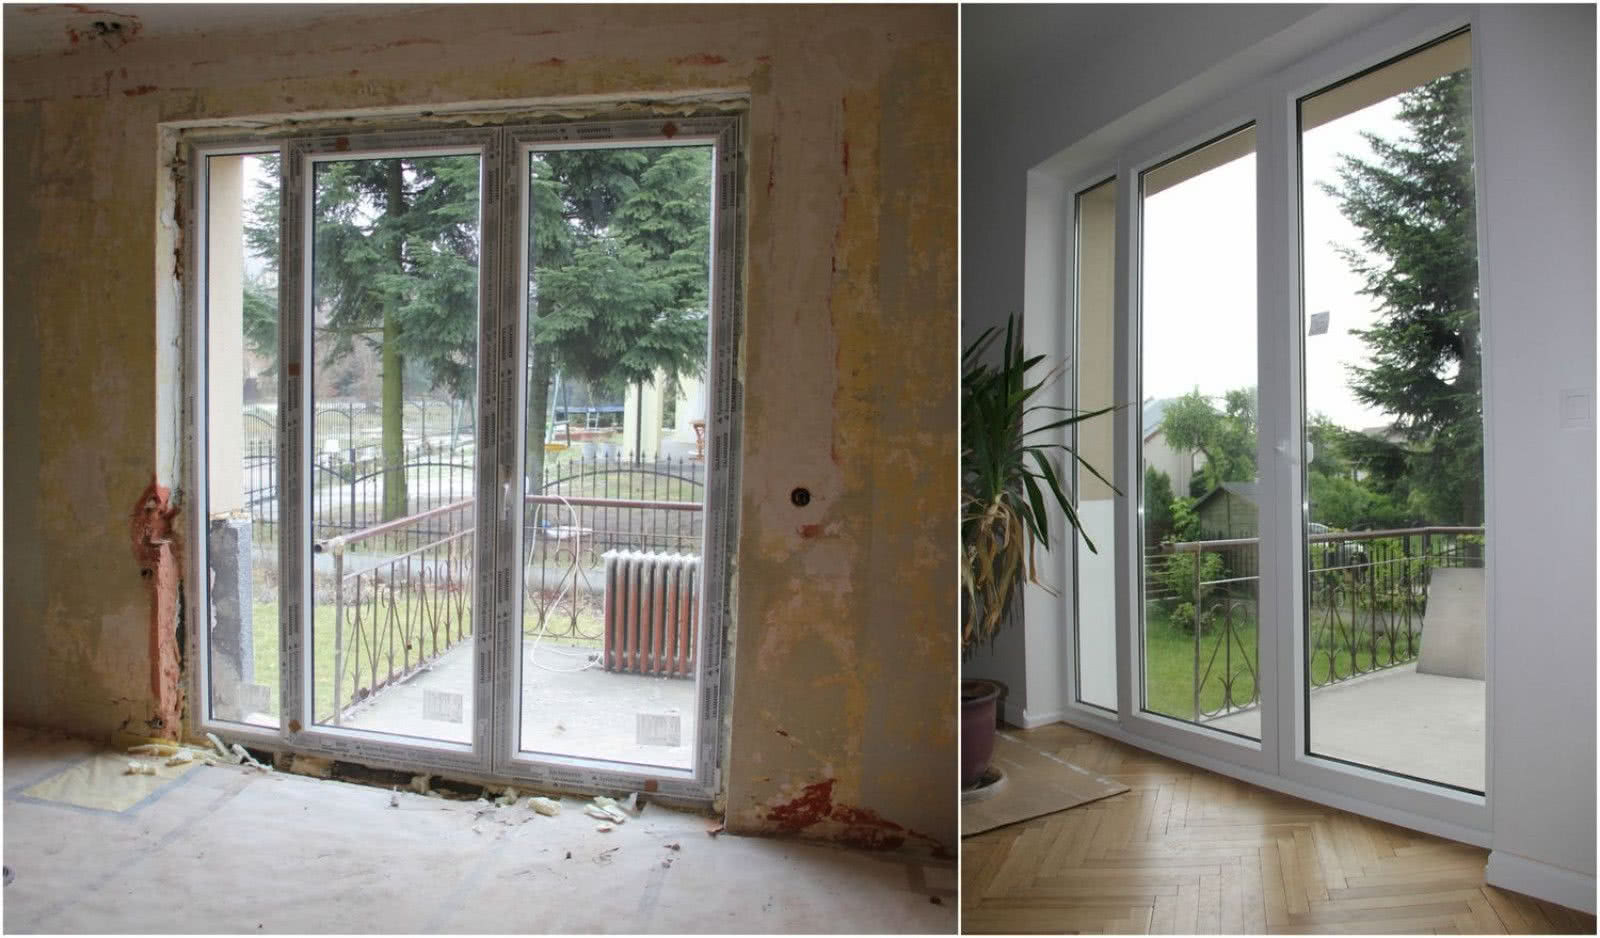 Nowe, plastikowe drzwi balkonowych w remontowanym domu - w trakcie prac i po ich zakończeniu. fot. J. Werner